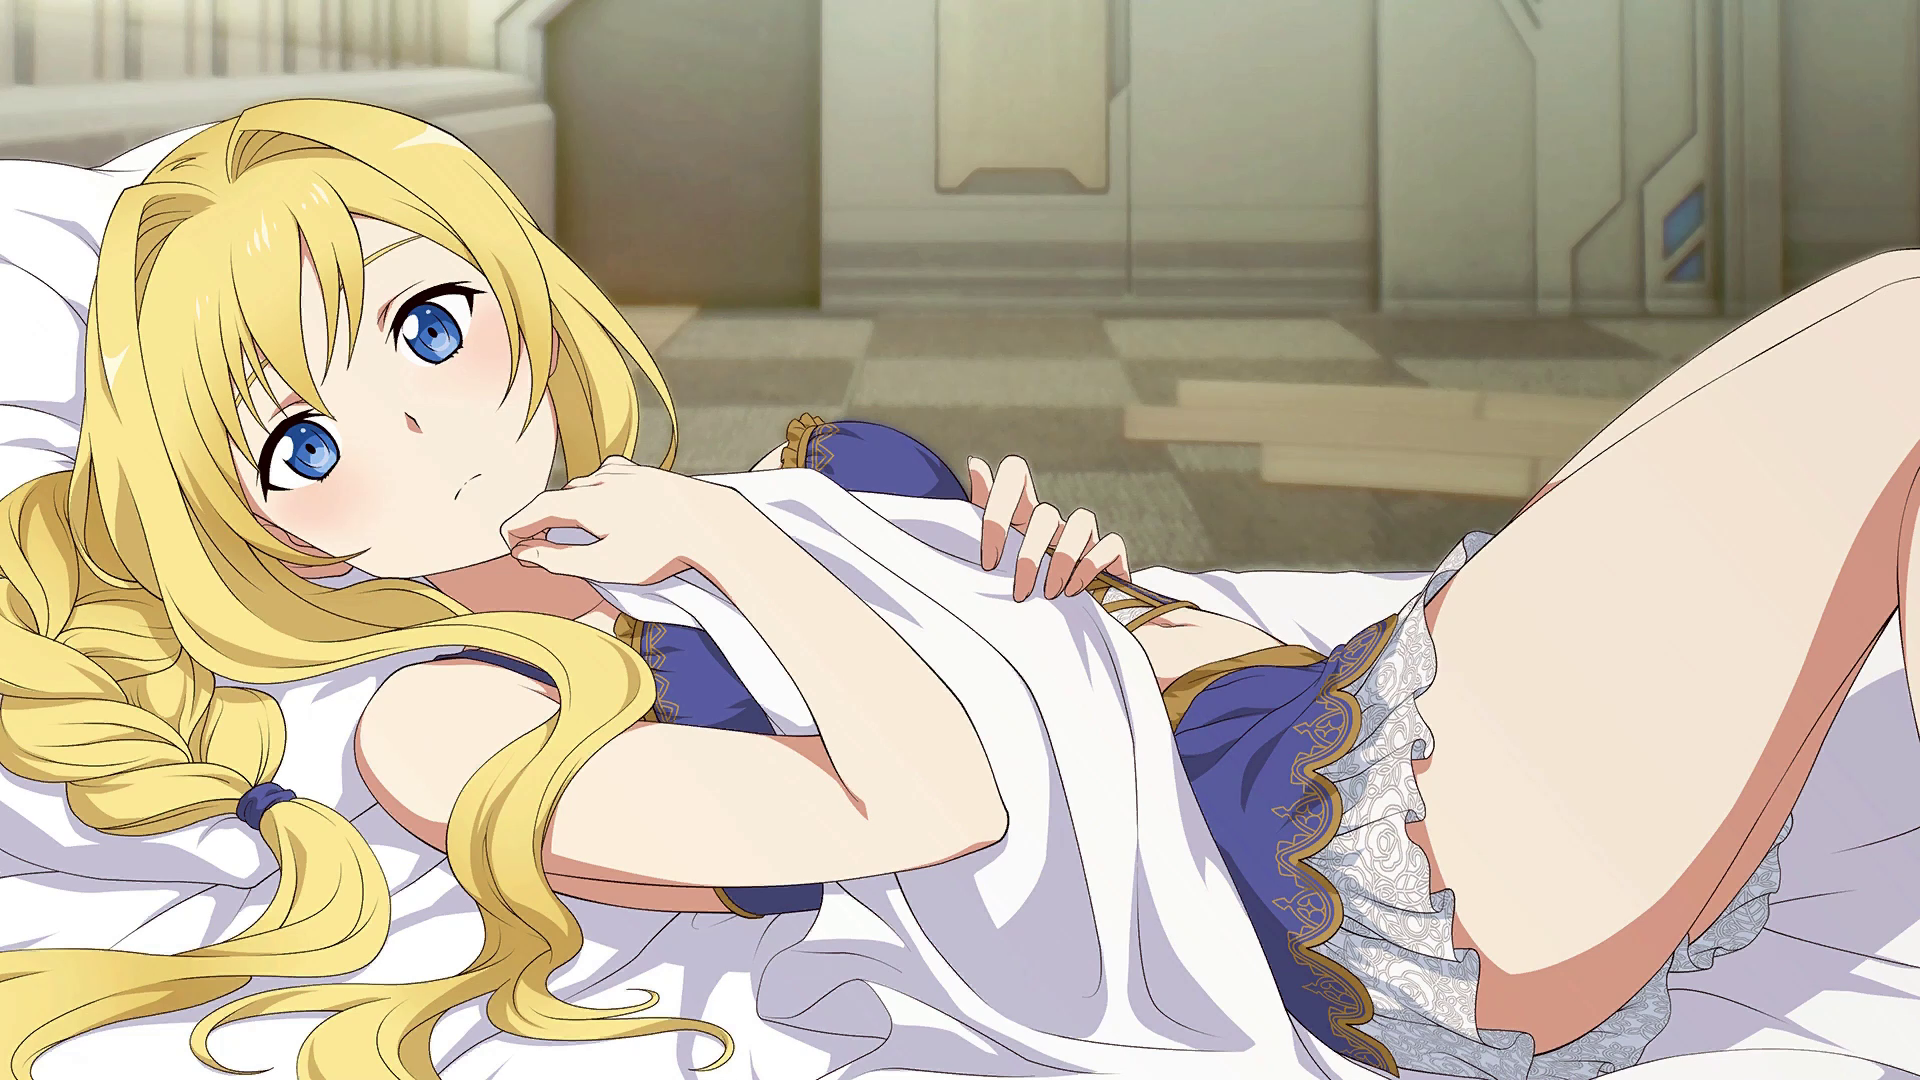 Anime 1920x1080 anime anime girls blue eyes long hair legs Alice Zuberg in bed blonde Sword Art Online Alicization